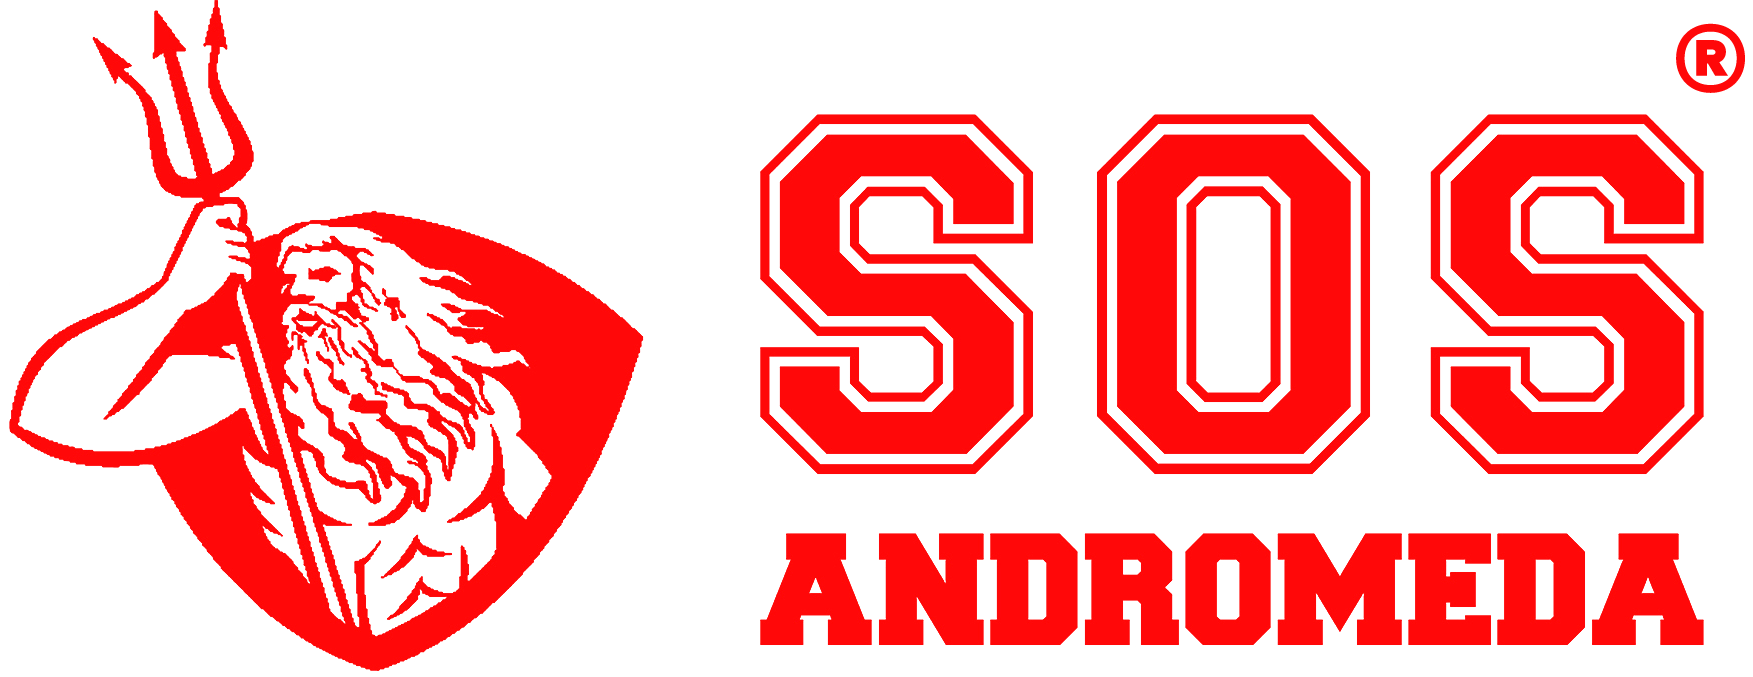 Logotipo SOS Andromeda